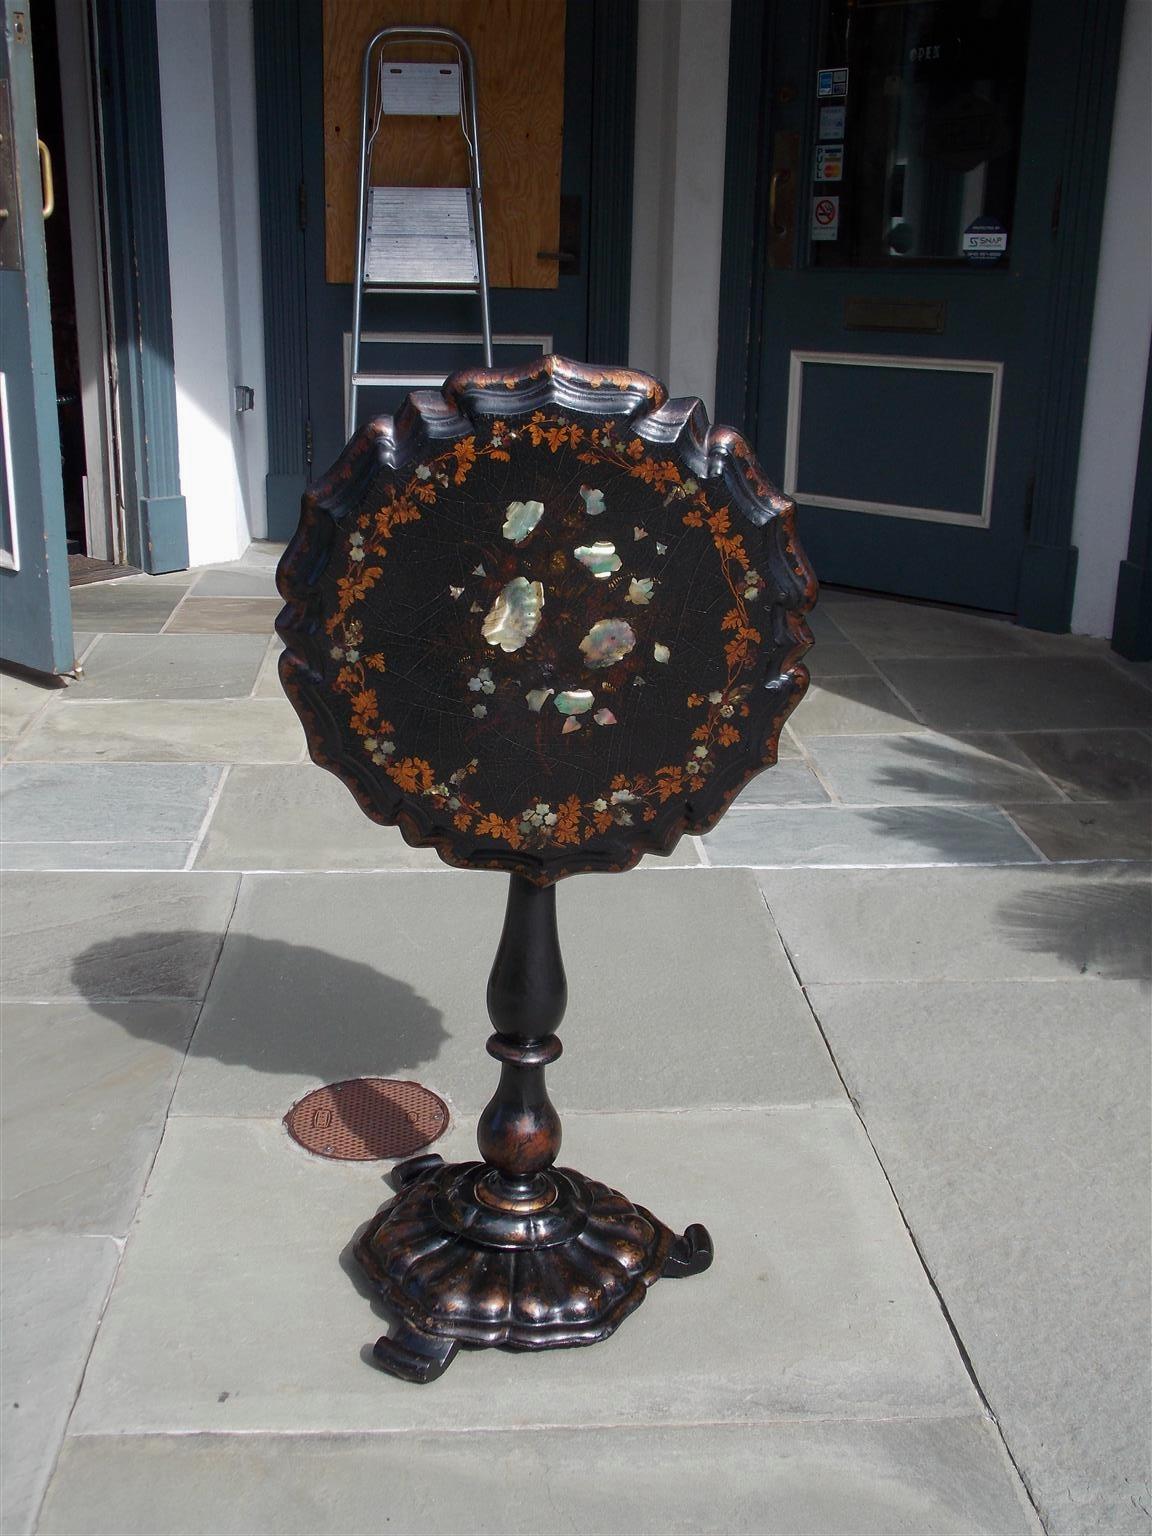 Englischer Regency-Tisch aus Pappmaché mit kippbarer Platte und abgeschrägter Kante, mit vergoldetem schabloniertem Blattwerk, Perlmuttintarsien, gedrehtem, bauchigem Ringsockel, originalem Schließmechanismus und auf einem runden, gadronierten